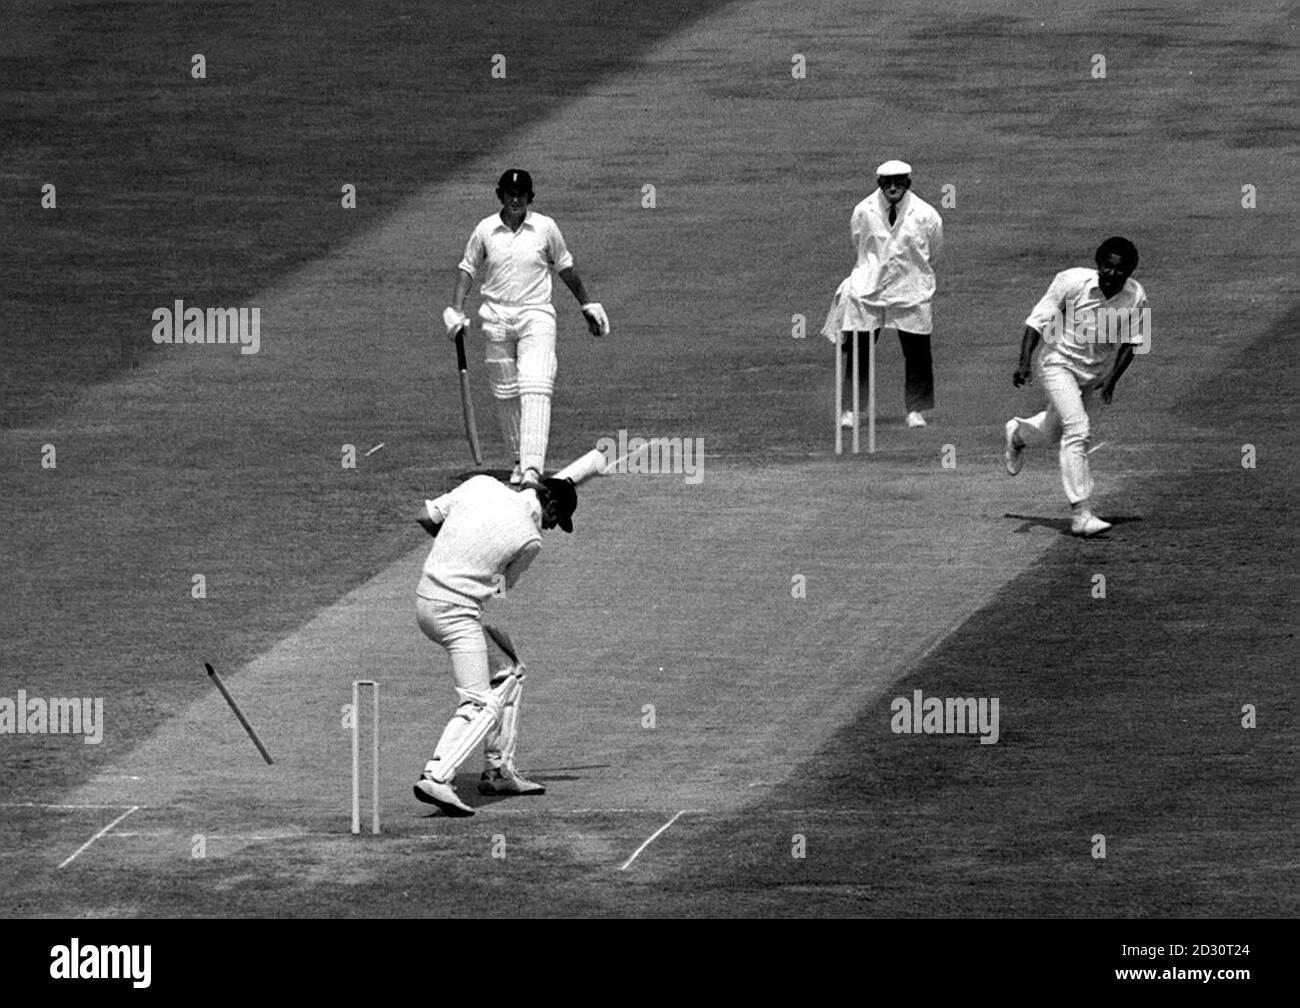 England Kapitän Tony Greig (unten) aus Stumpf wird geschickt fliegen, wie er eine Ente sammelt, während der schnellen Bowling von Andy Roberts (oben rechts) der West Indies, während ihres ersten Cricket-Test-Match in Trent Bridge, Nottingham. Stockfoto